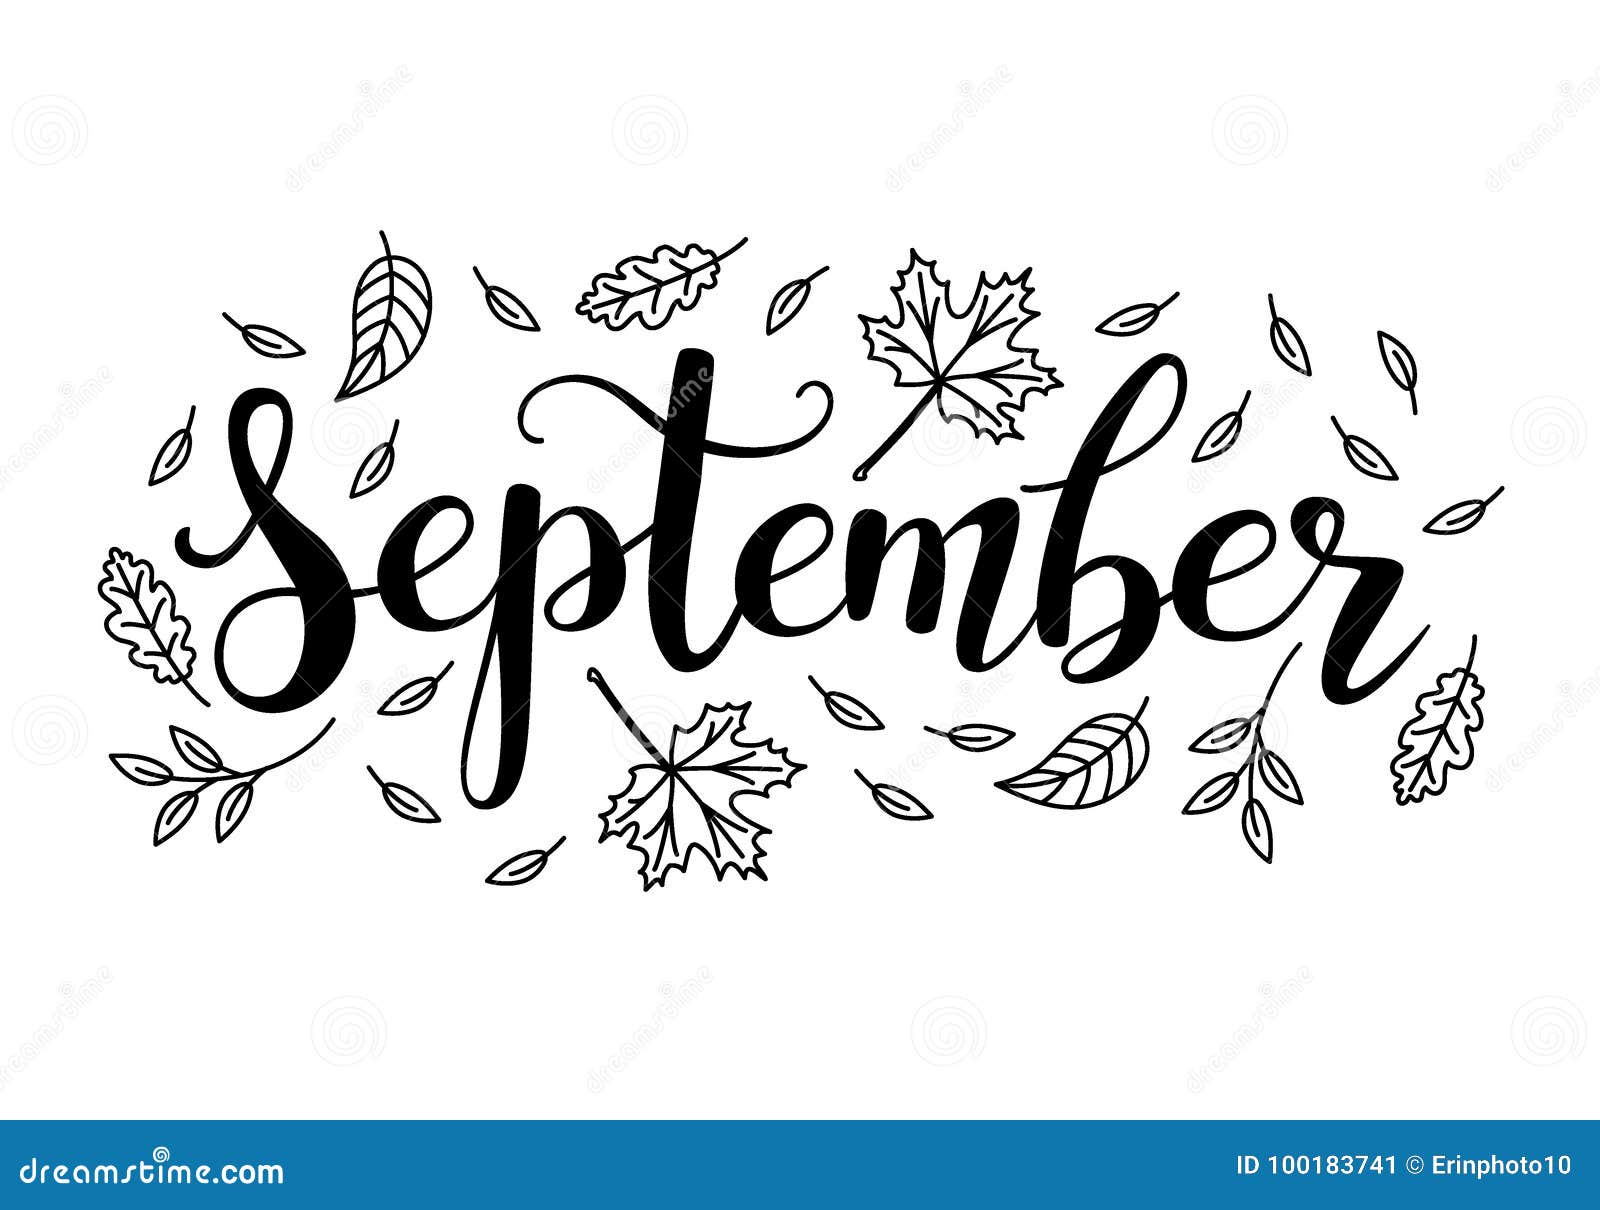 Напиши слово сентябрь. Сентябрь надпись. Сентябрь каллиграфия. Каллиграфическая надпись сентябрь. September надпись.